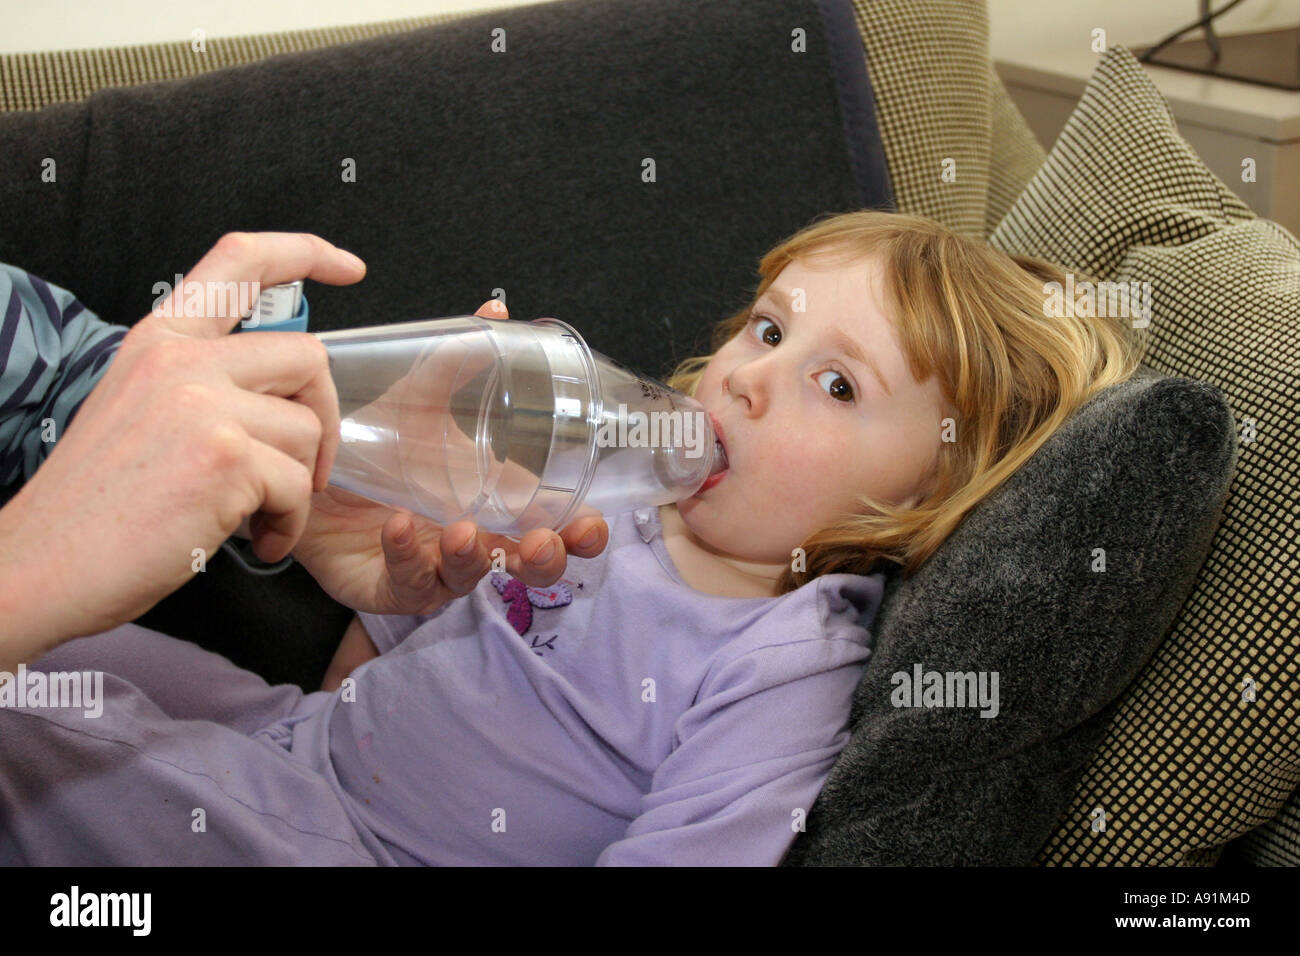 Père fille aidant à utiliser une entretoise en plastique de l'asthme (chambre) attaché avec un inhalateur à la suite d'une attaque. Banque D'Images